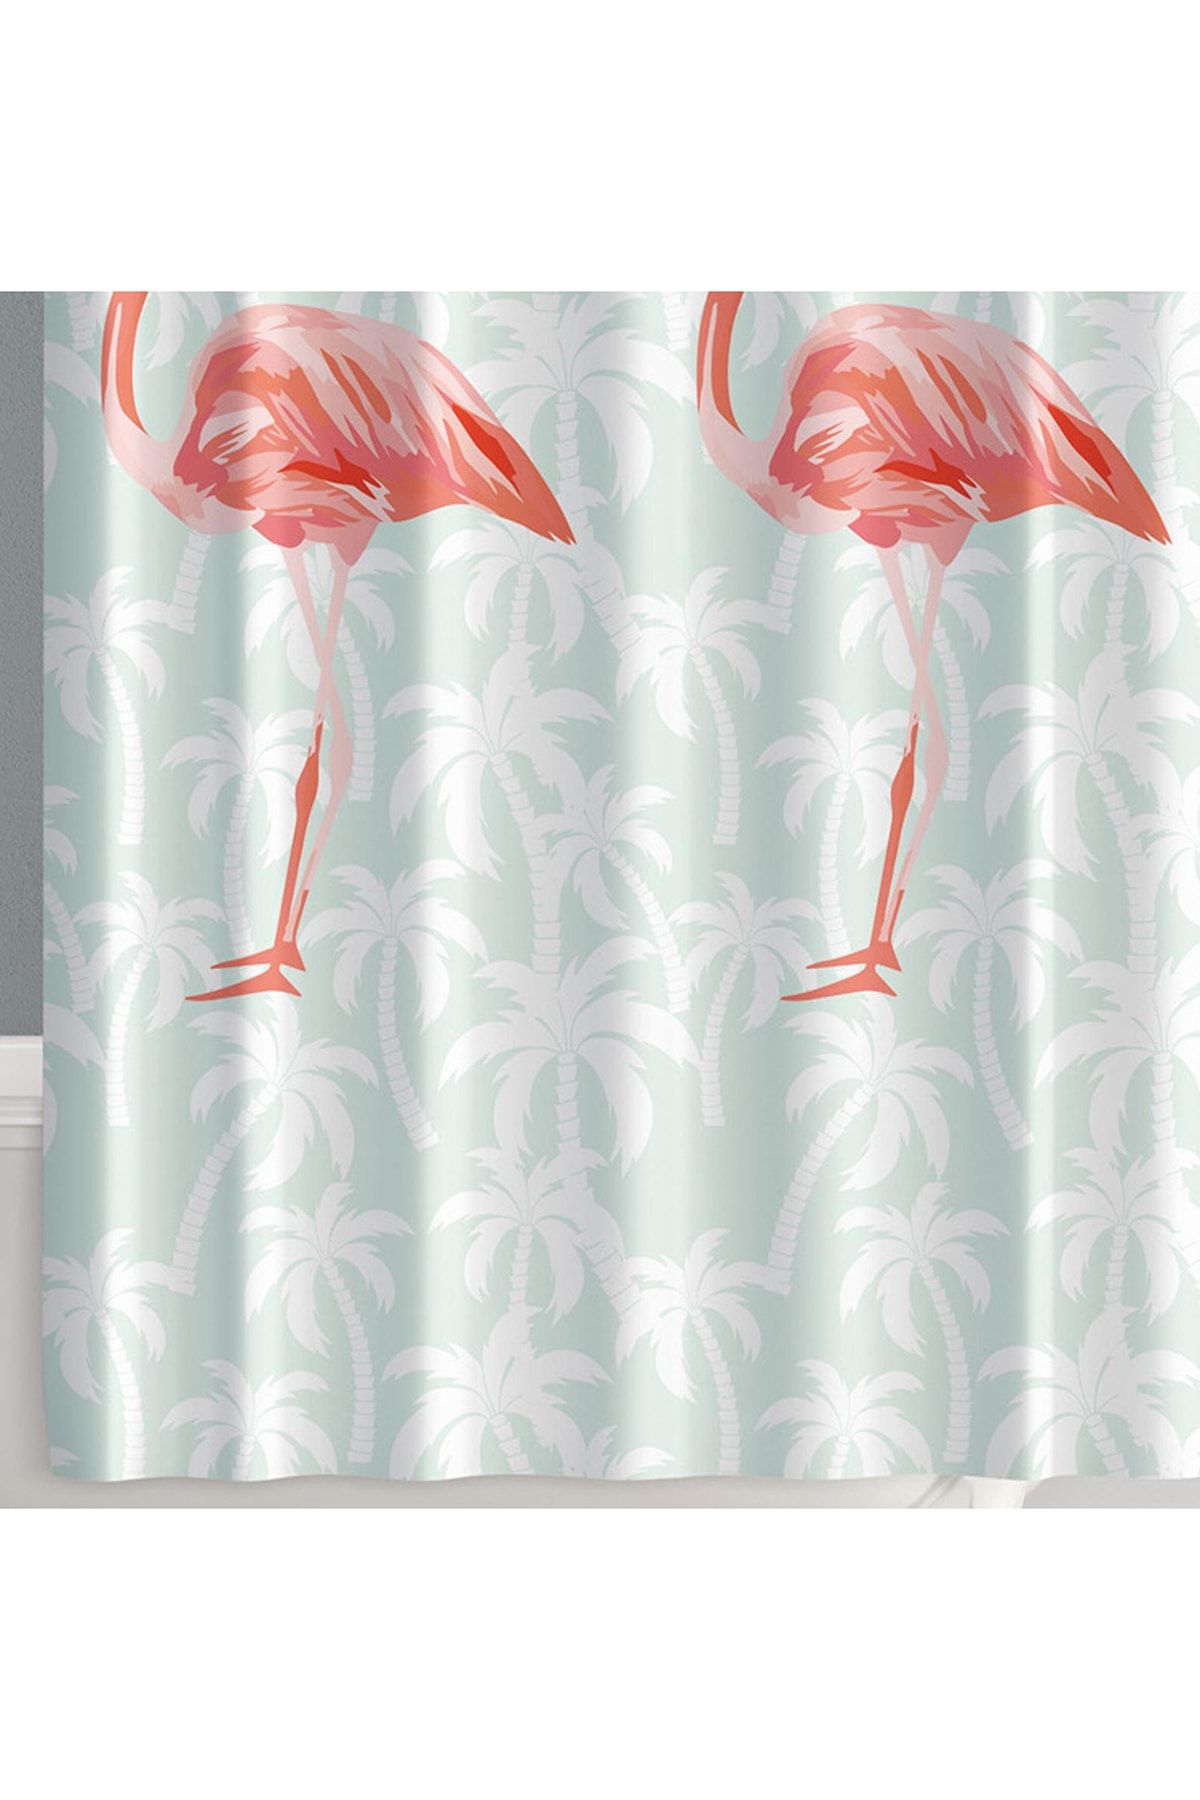 Prado Flamingos Banyo Perdesi, Duş Perdesi 180x200cm BPFLAMINGOS-180X200